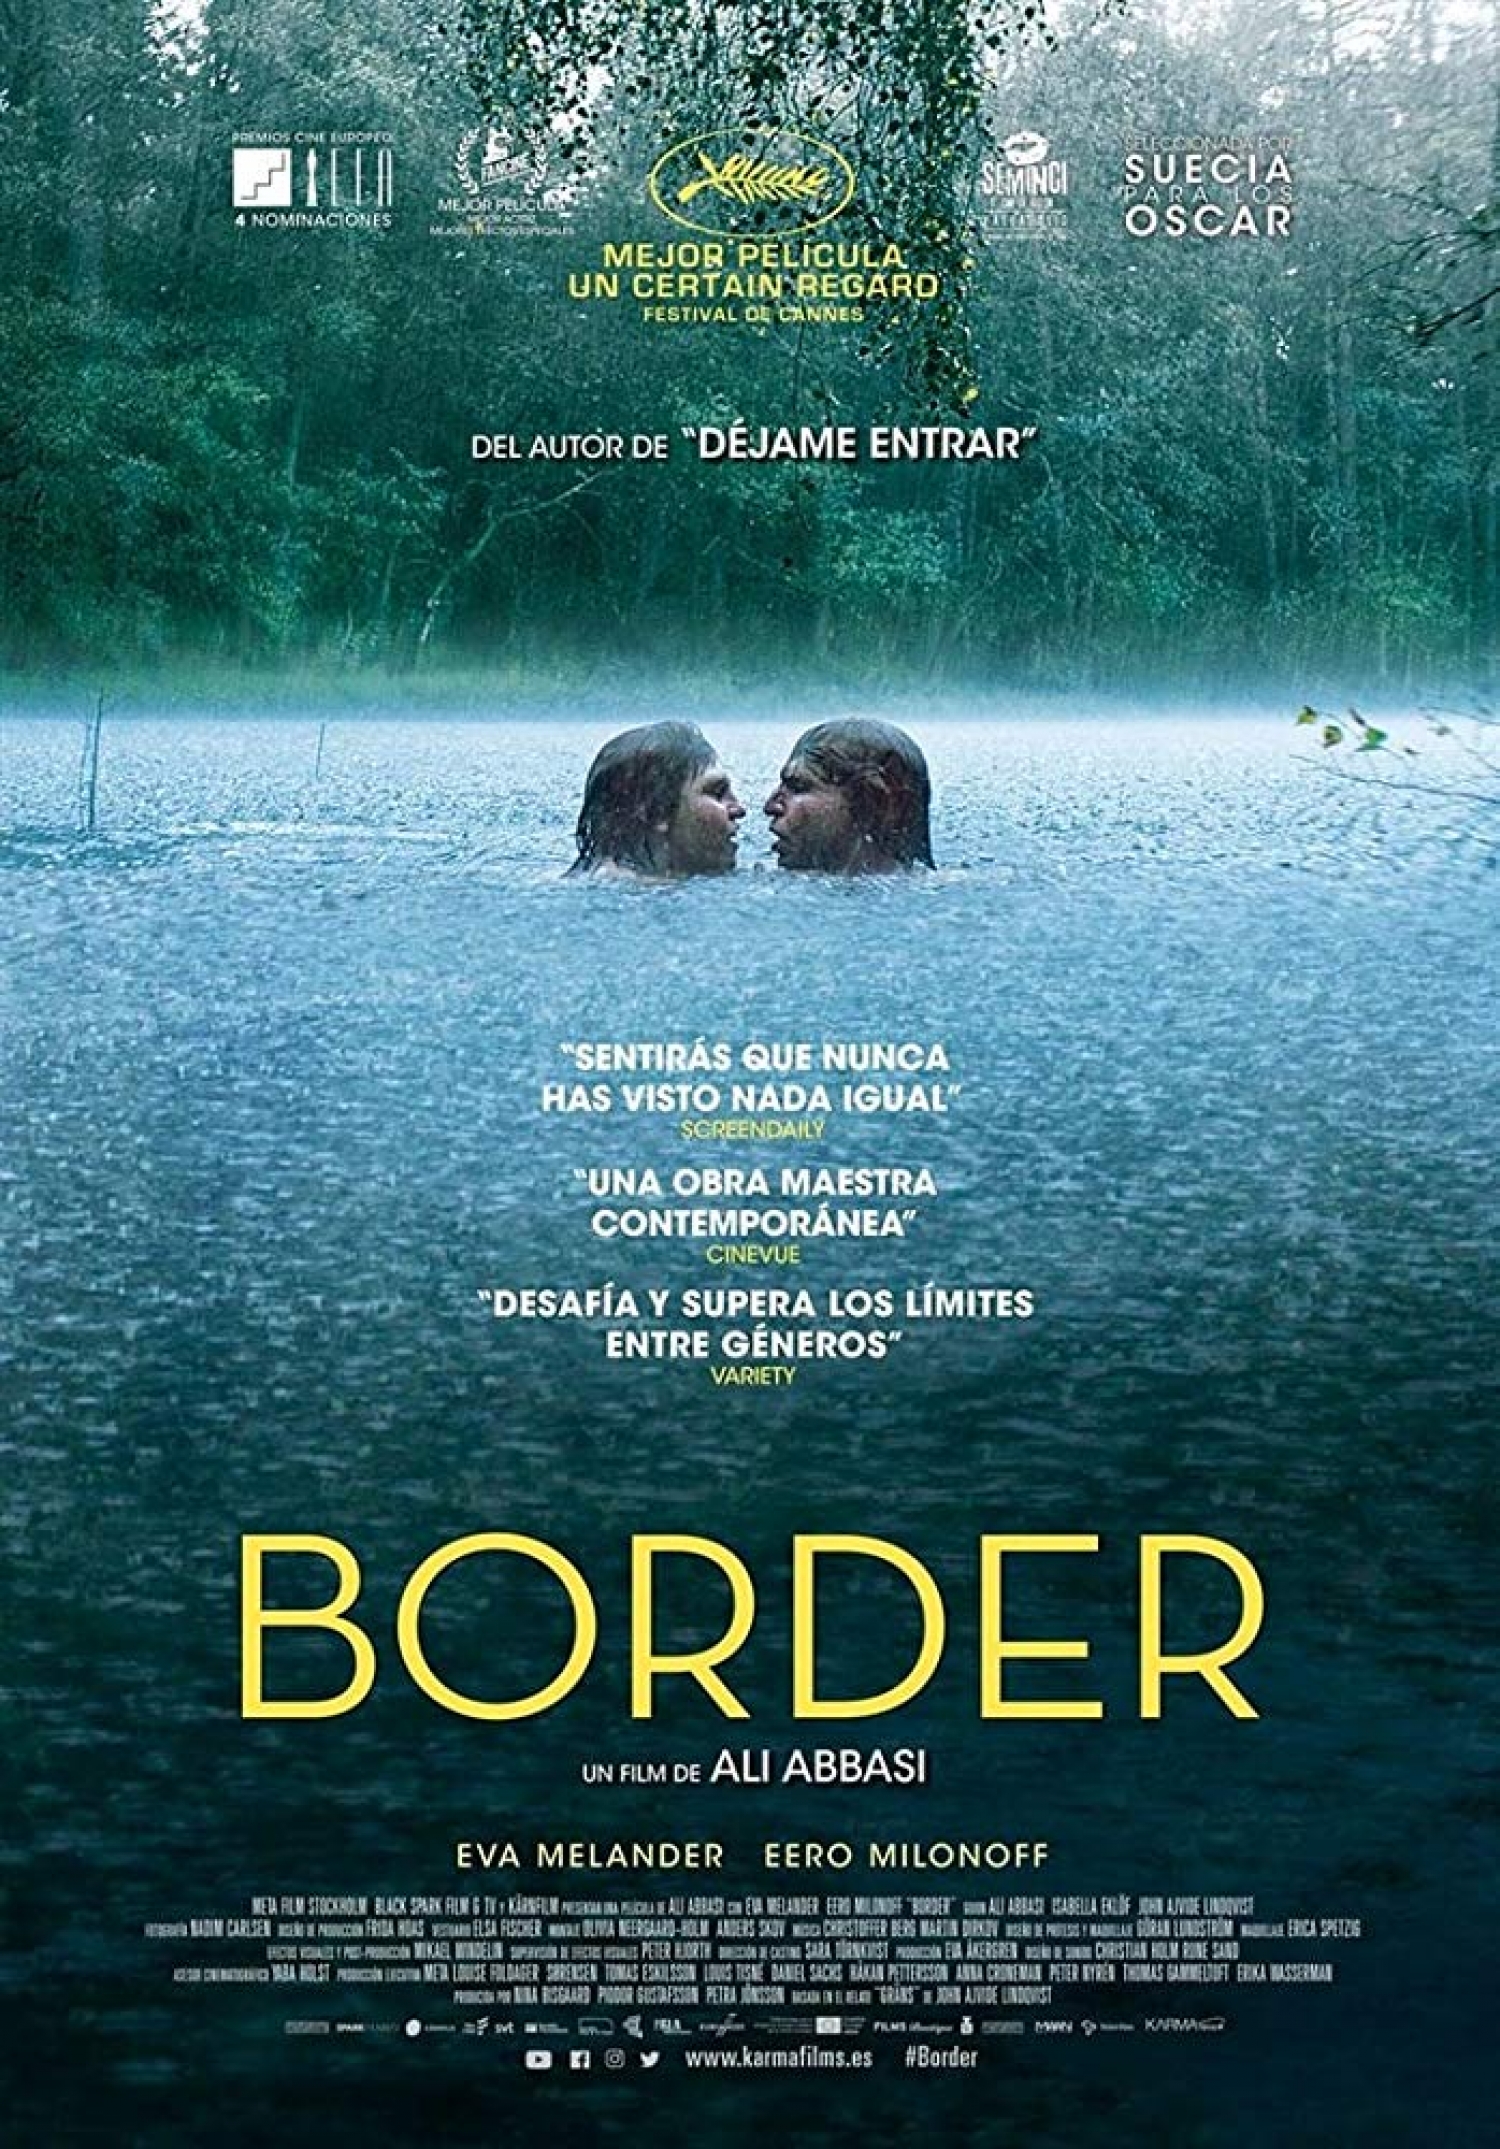 Border | Trailer legendado, trailer oficial e sinopse - Café com Filme